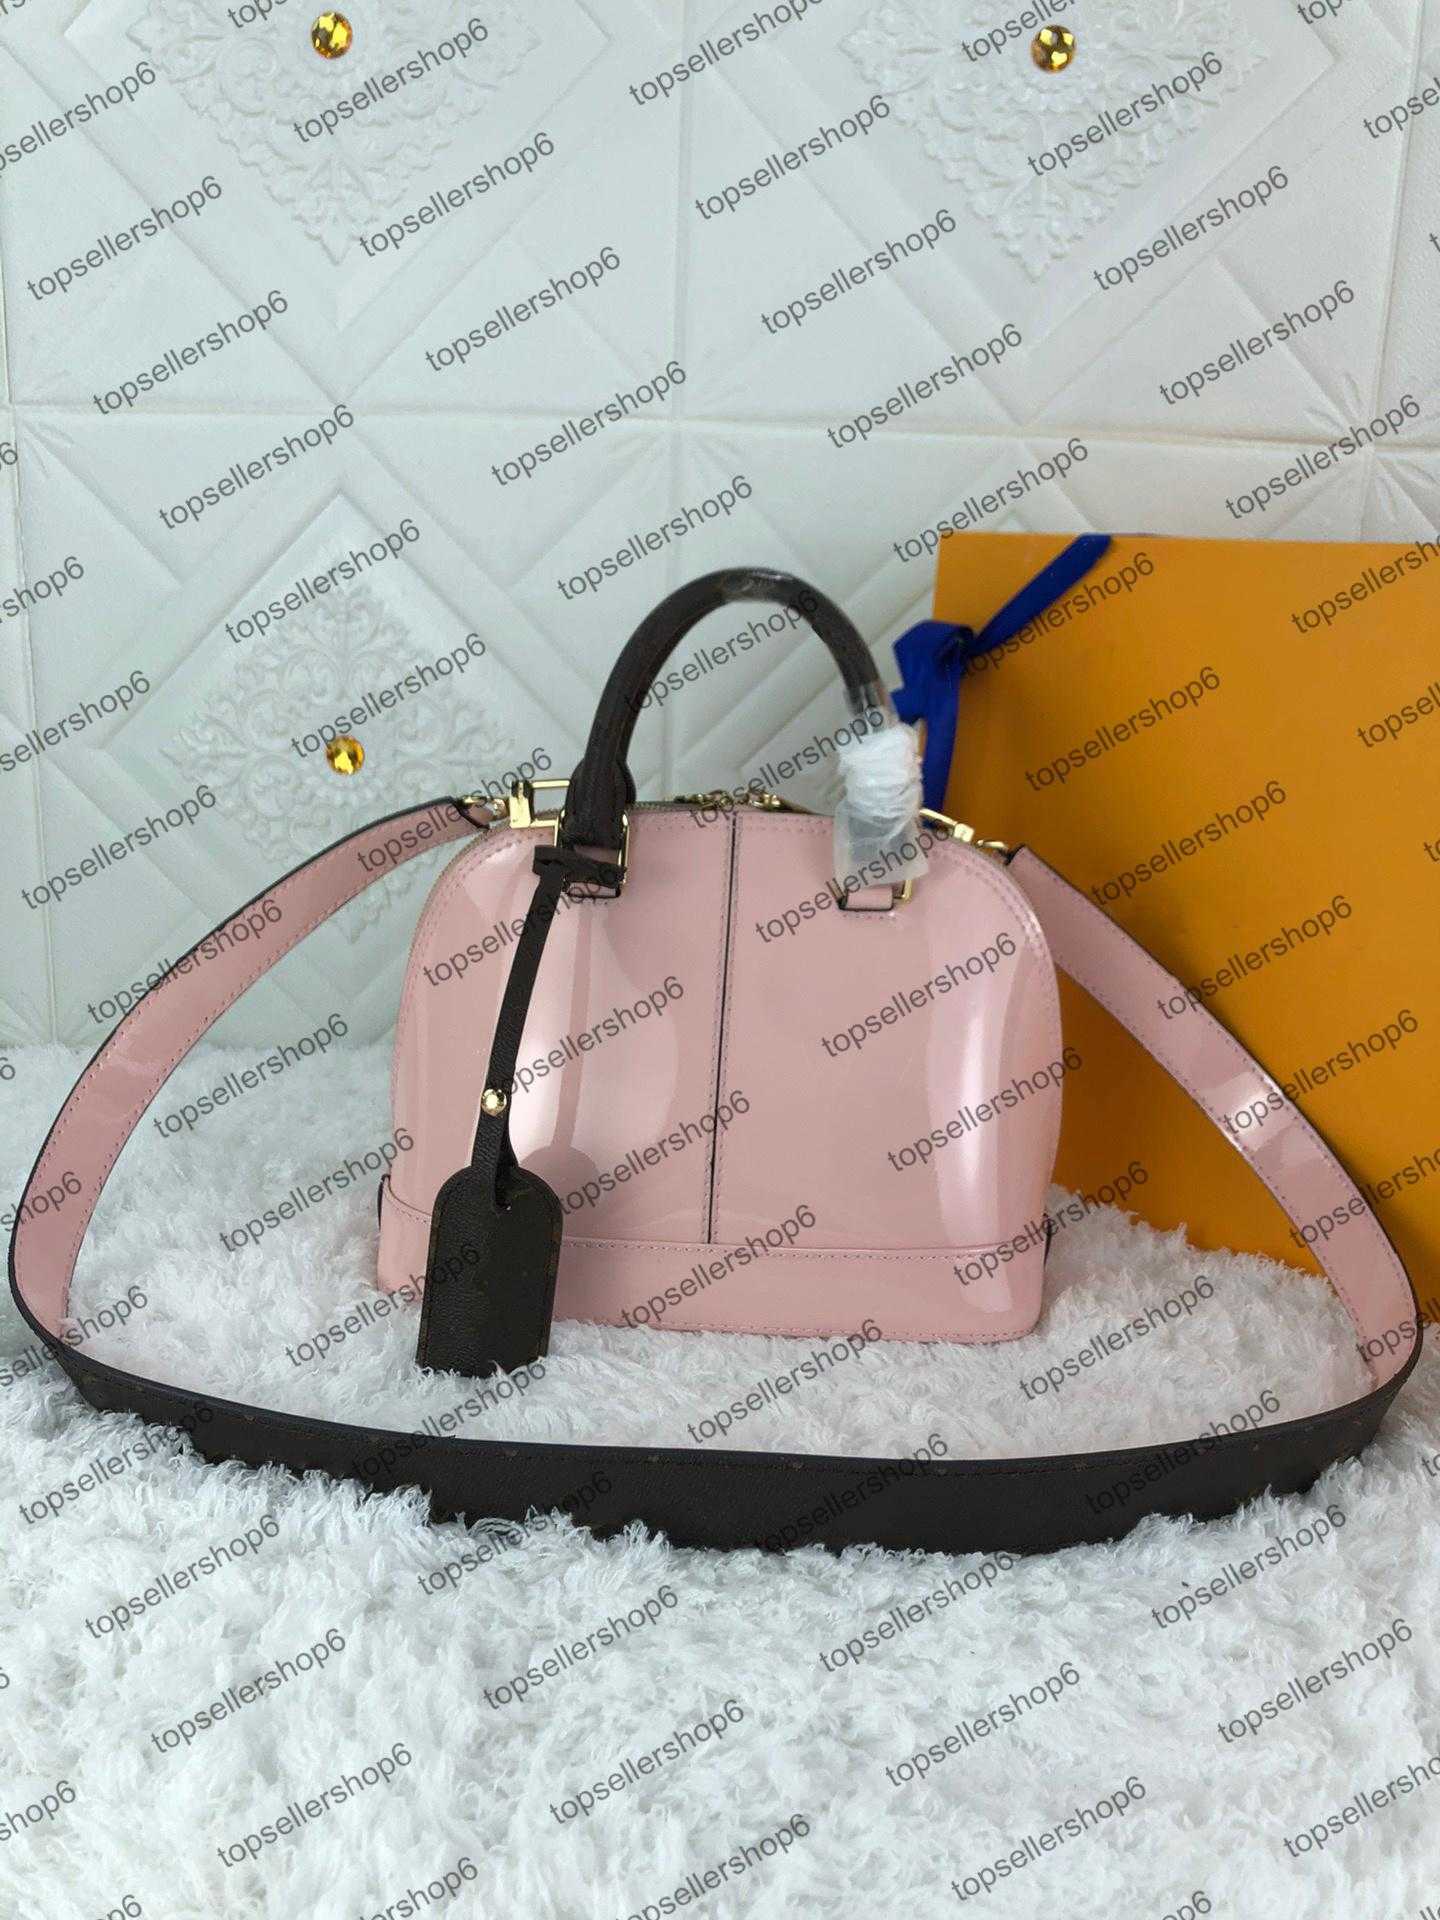 M54785 Designer women Miroir tote bright bag genuine calf leather shell shoulderbag purse clutch evening crossbody handbag